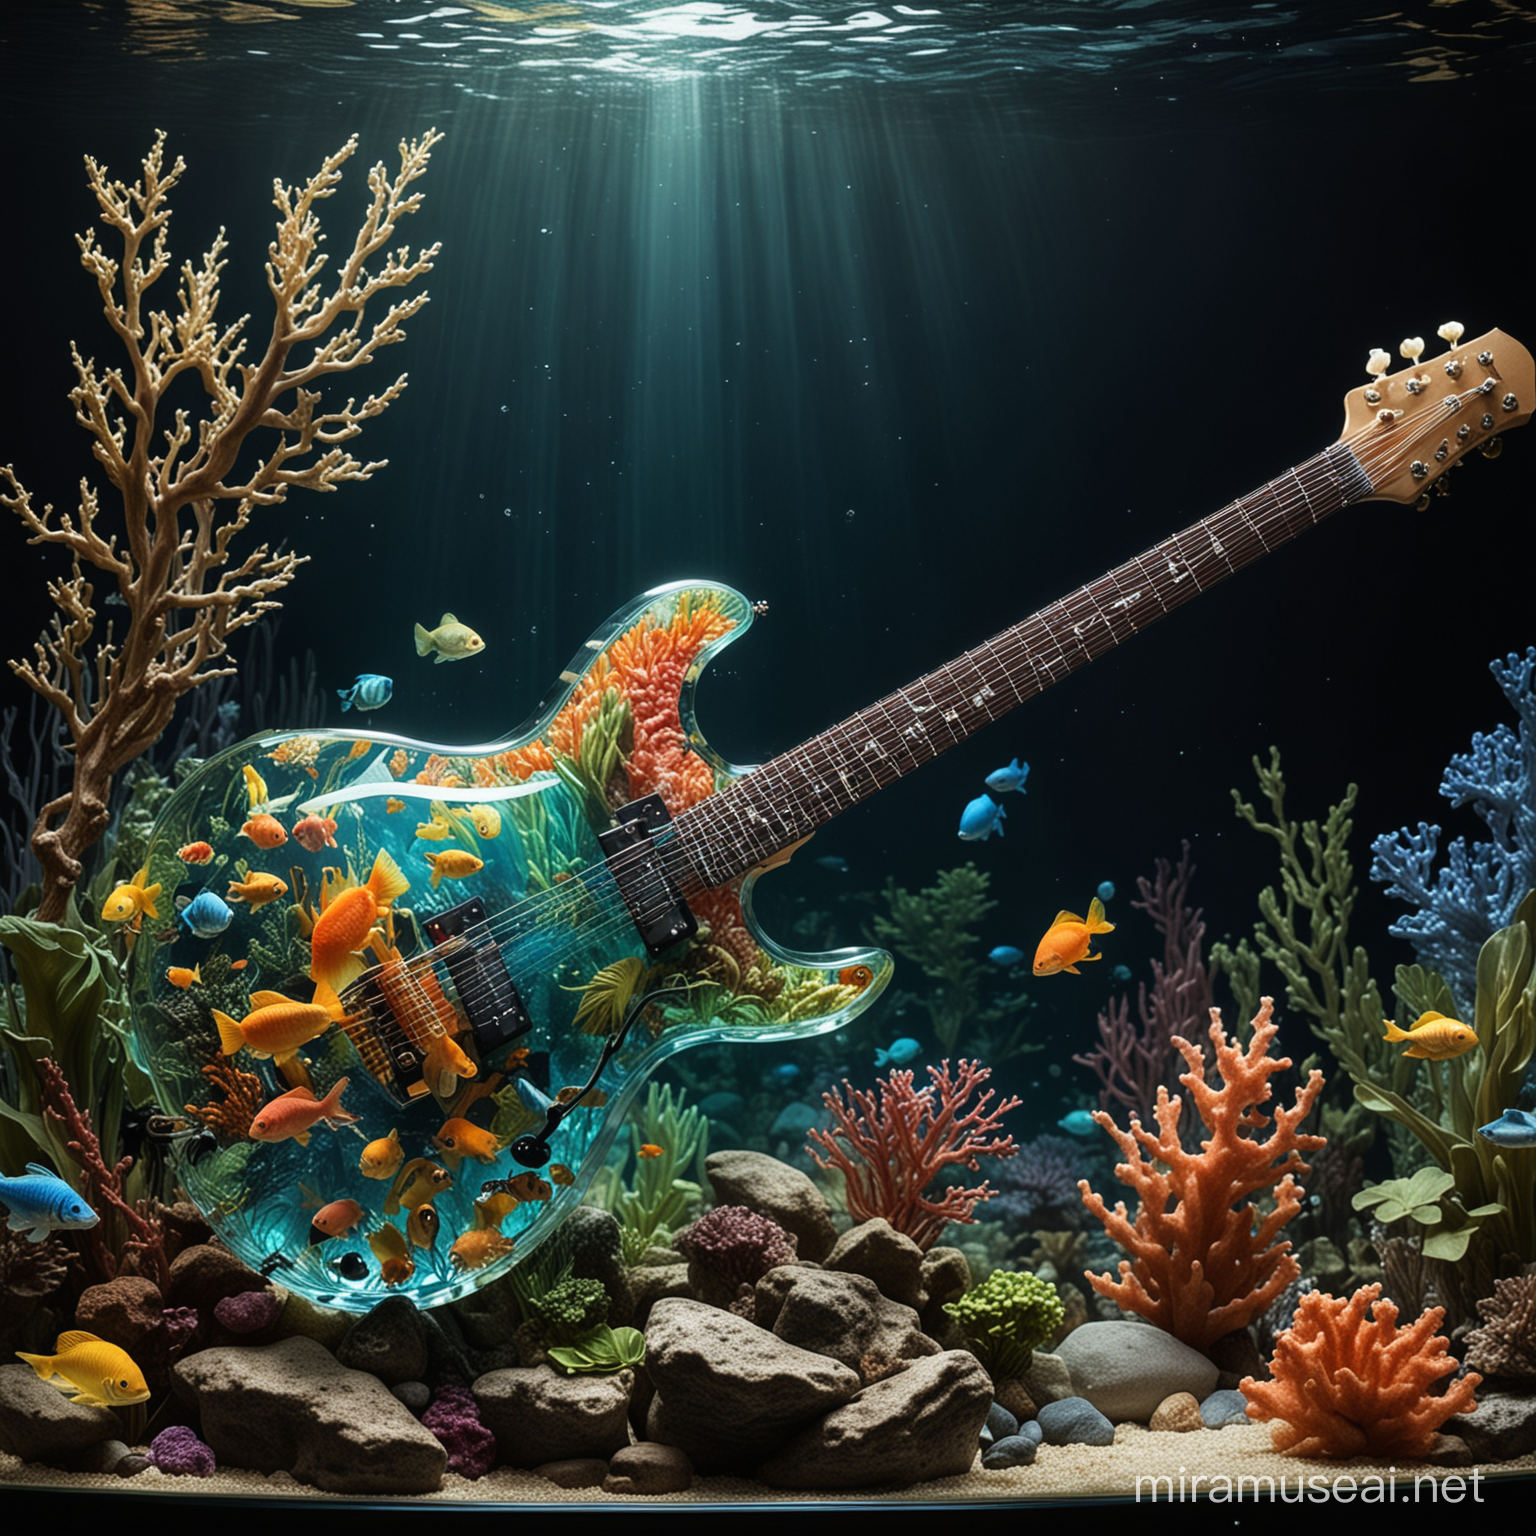 Electric Guitar Aquarium Harmonious Fusion of Music and Underwater Artistry